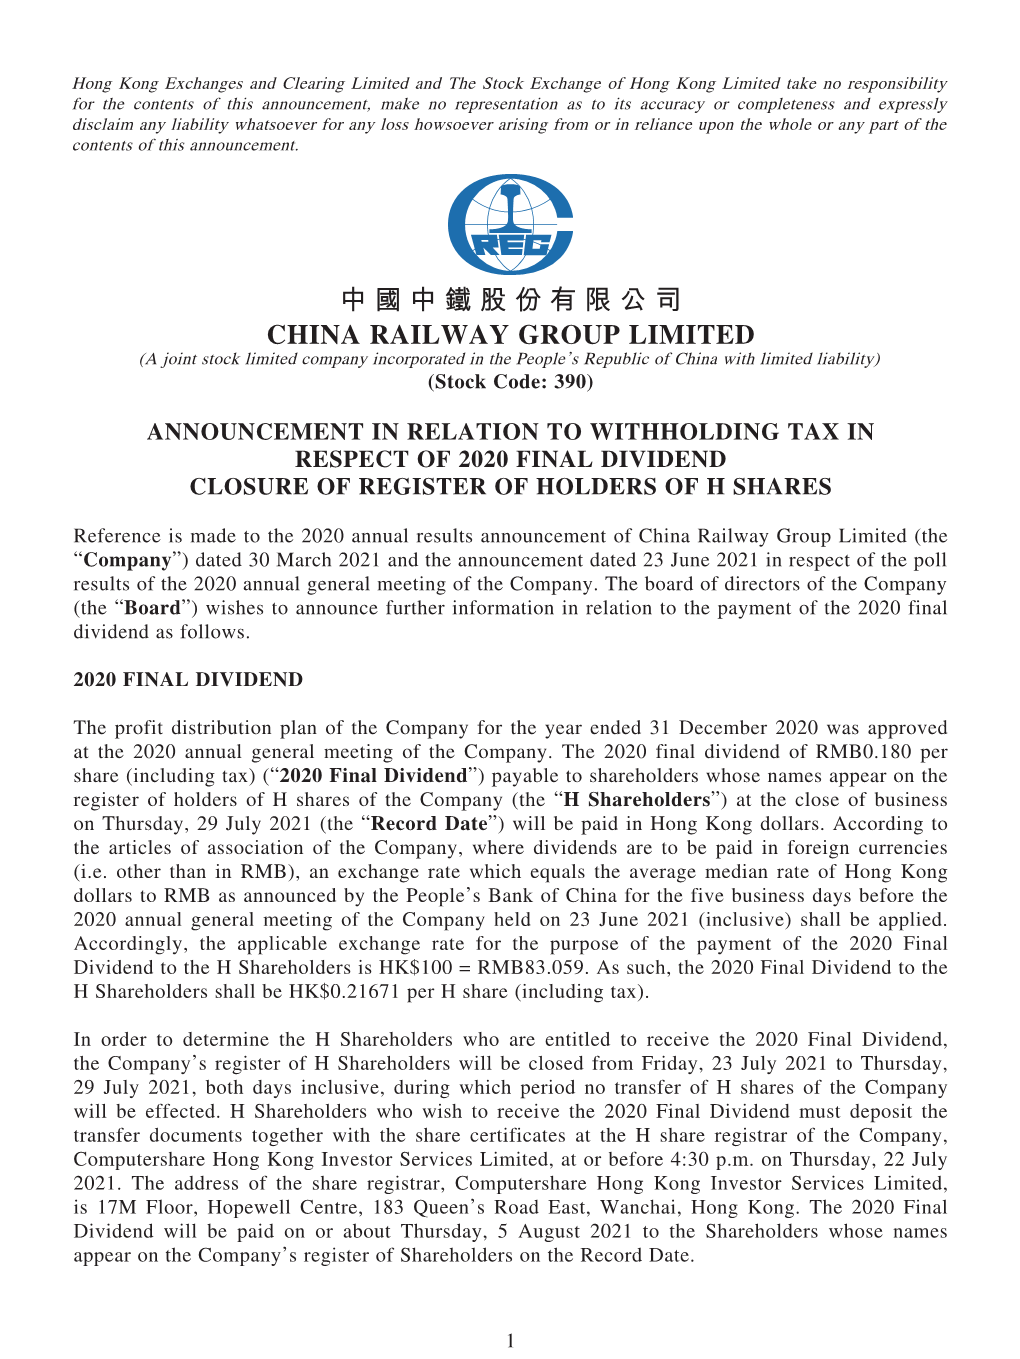 中國中鐵股份有限公司 CHINA RAILWAY GROUP LIMITED (A Joint Stock Limited Company Incorporated in the People’S Republic of China with Limited Liability) (Stock Code: 390)